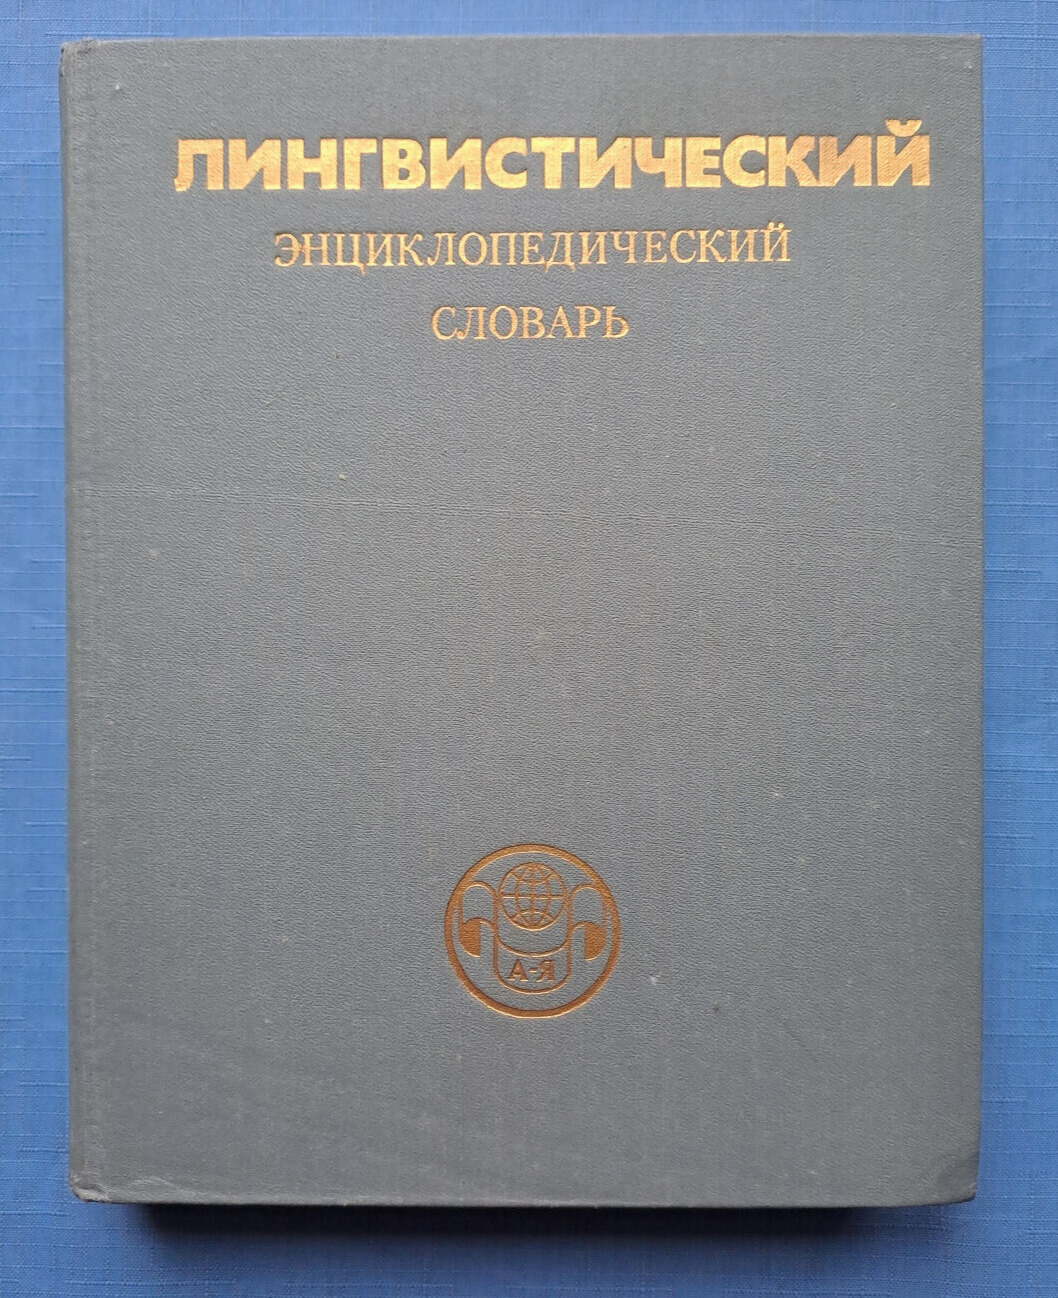 1990 Лингвистический словарь Linguistic encyclopedic dictionary Russian book